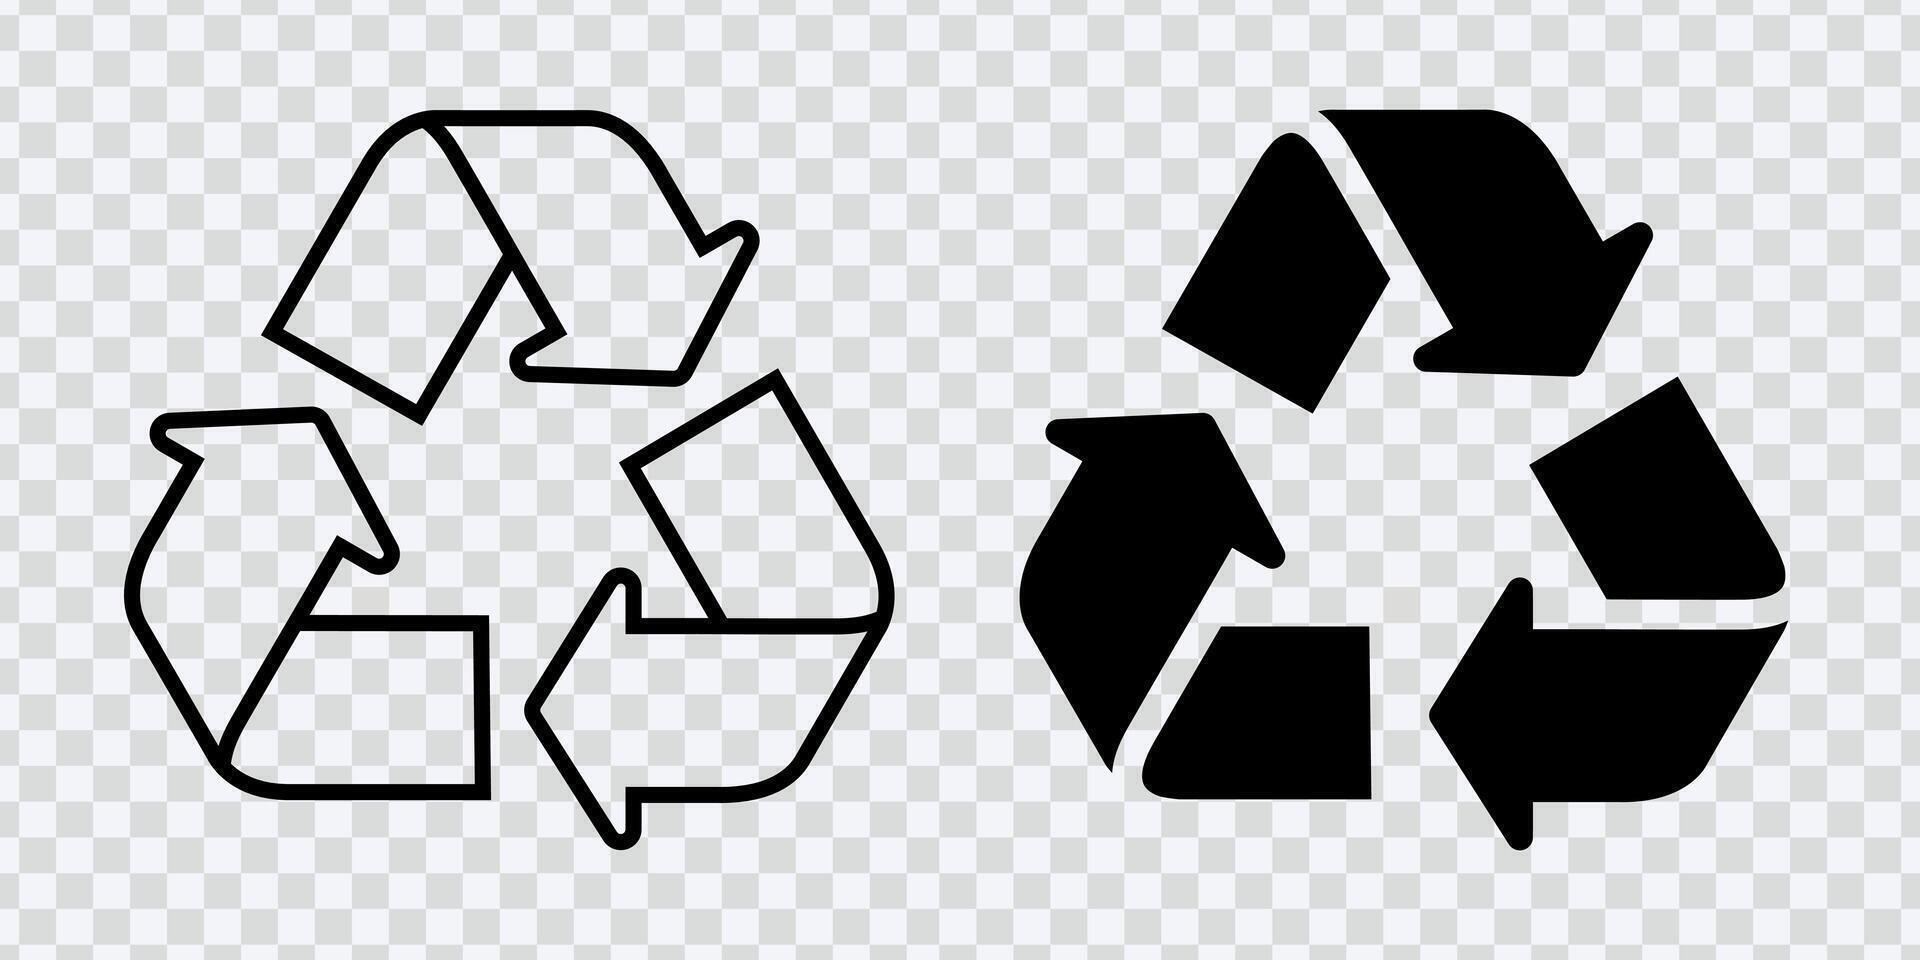 migliorare ambientale temi con riciclare icona con eco-friendly simboli per sostenibilità vettore